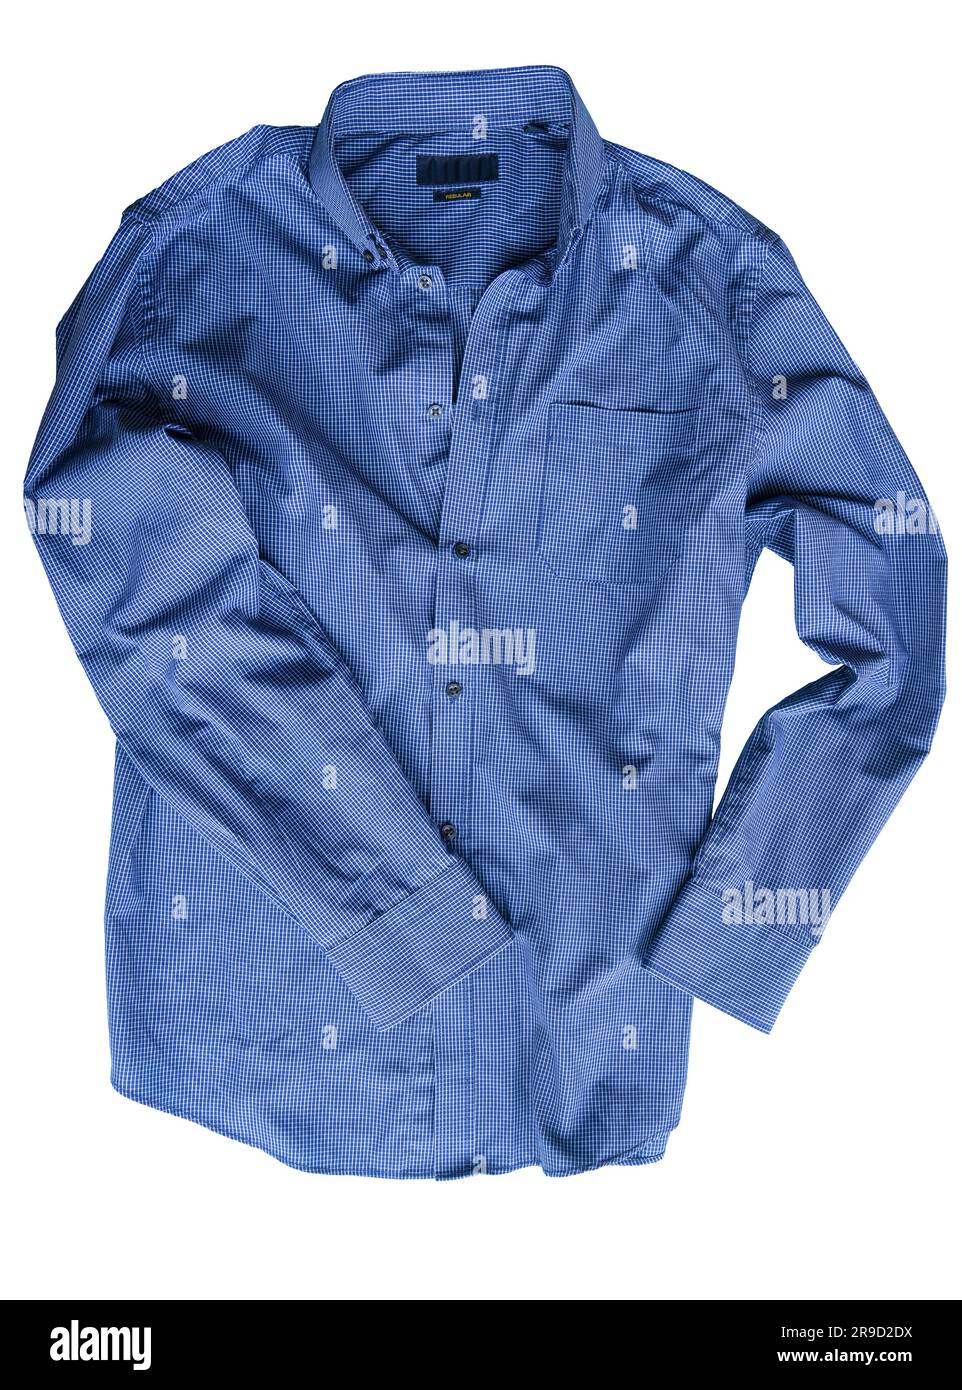 una camisa azul aislada sobre un fondo transparente Foto de stock